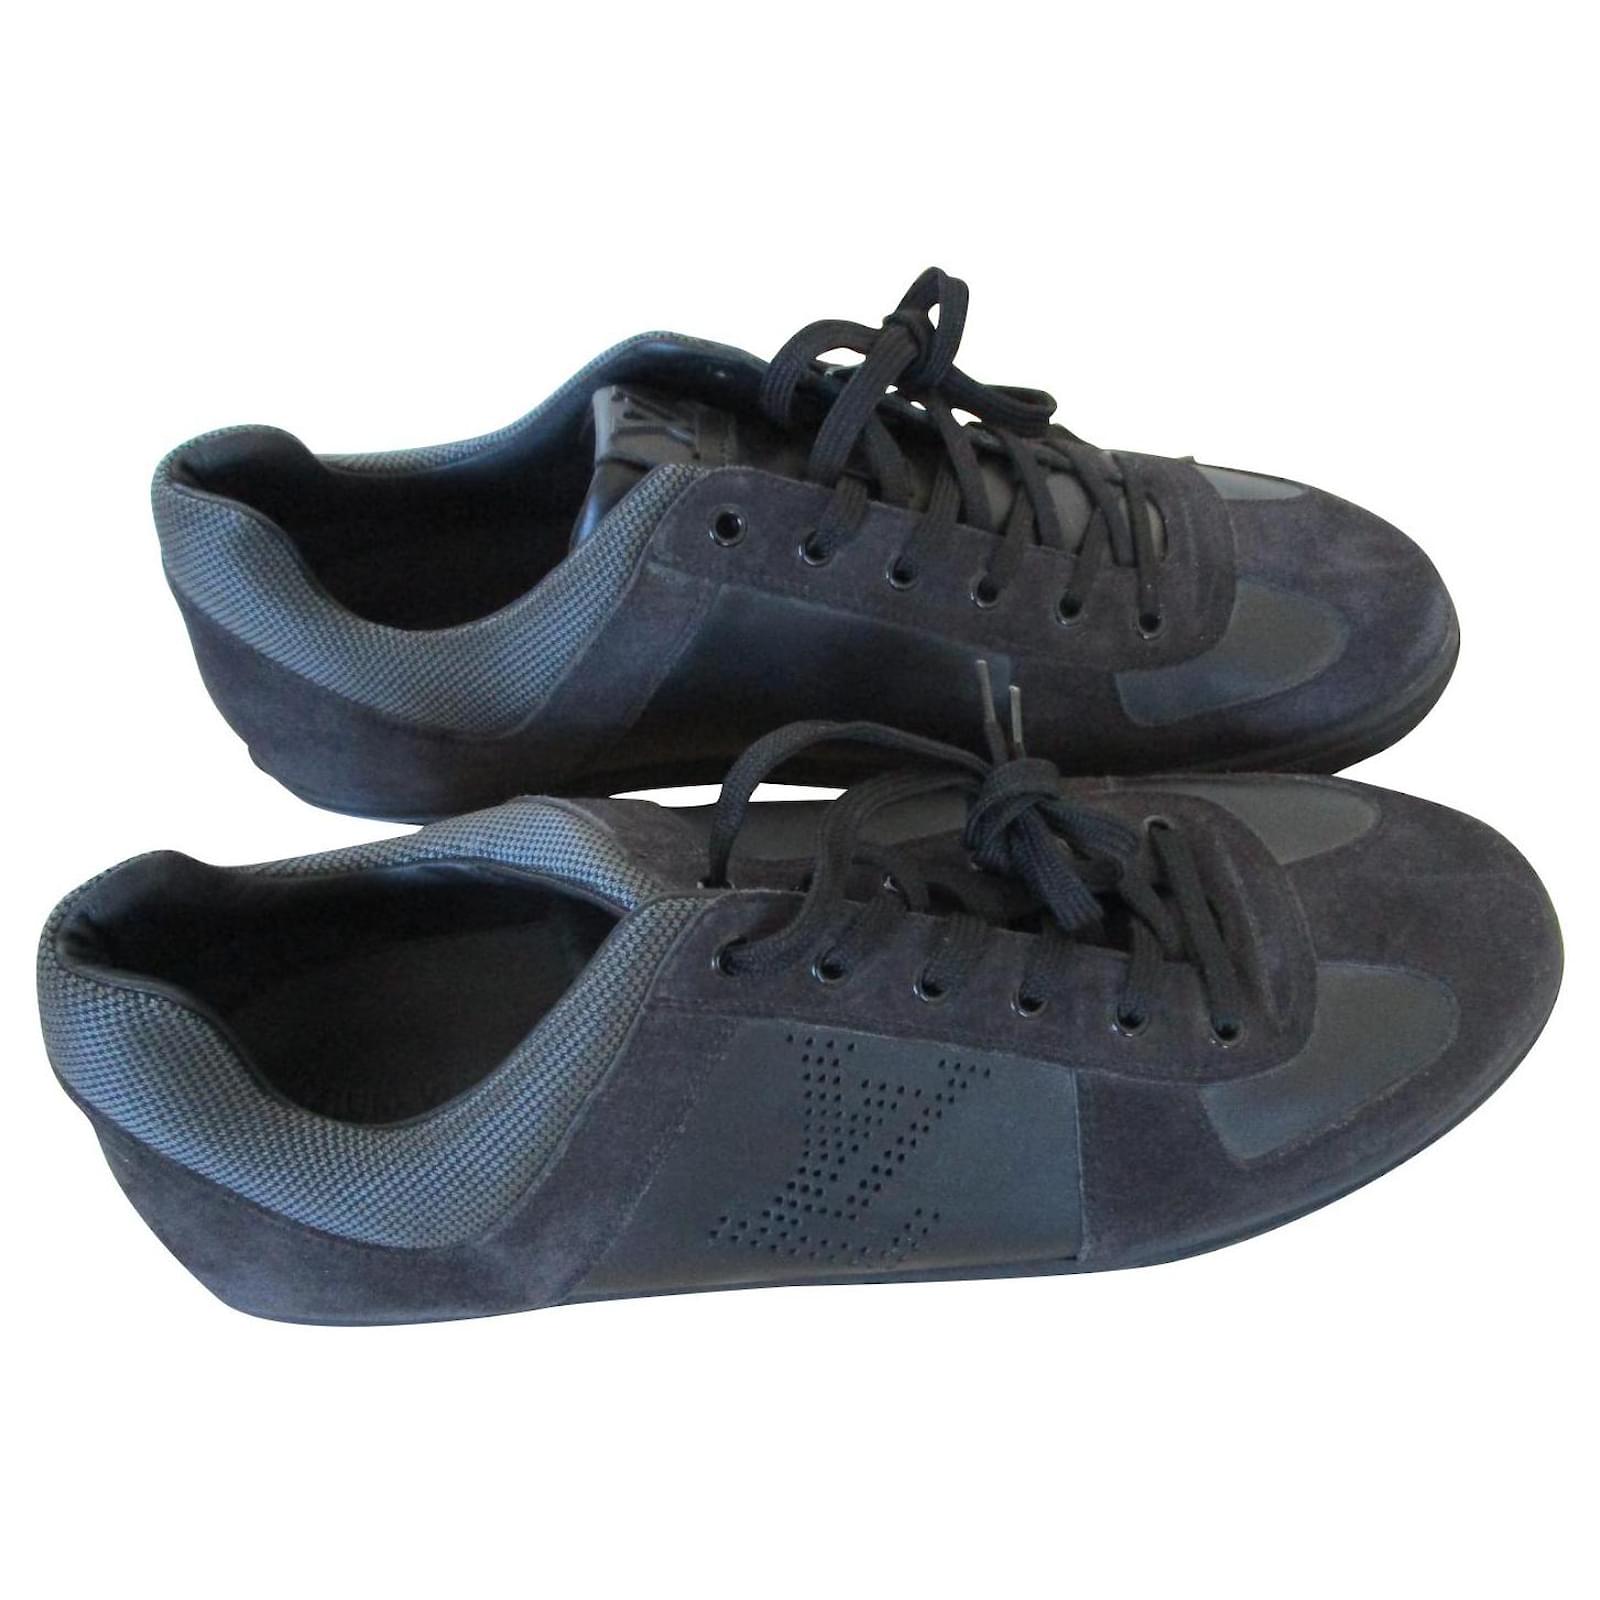 Bi-material sneakers, Pointure 11,5.